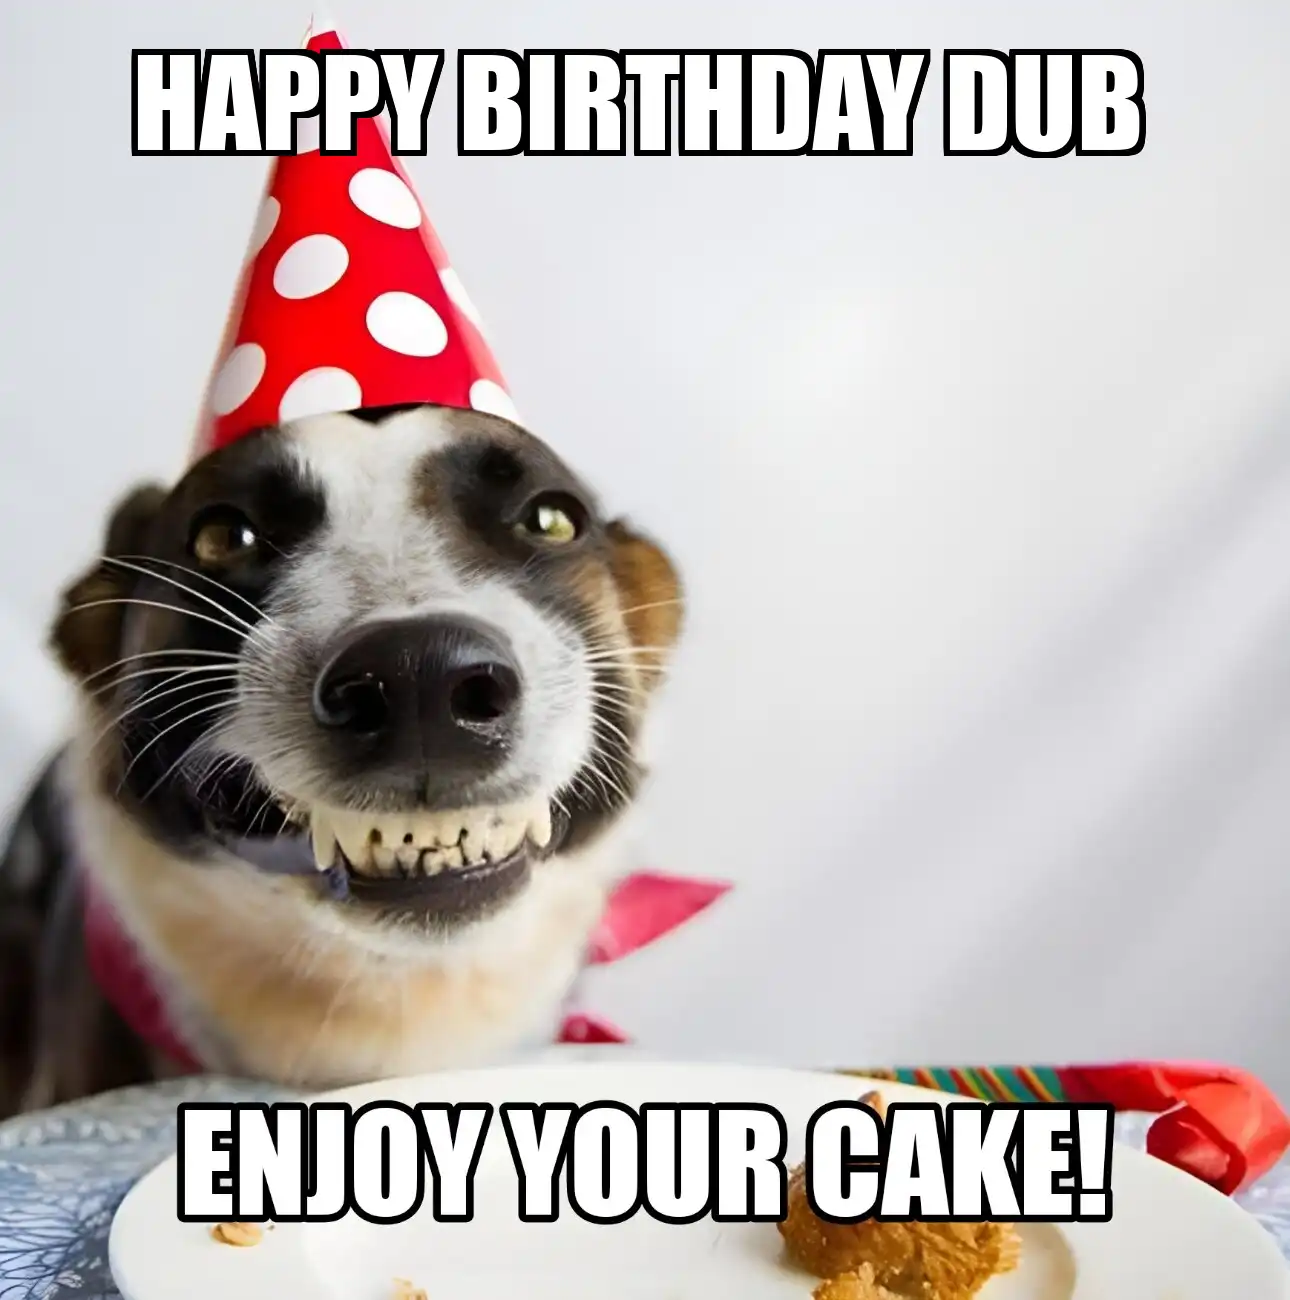 Happy Birthday Dub Enjoy Your Cake Dog Meme